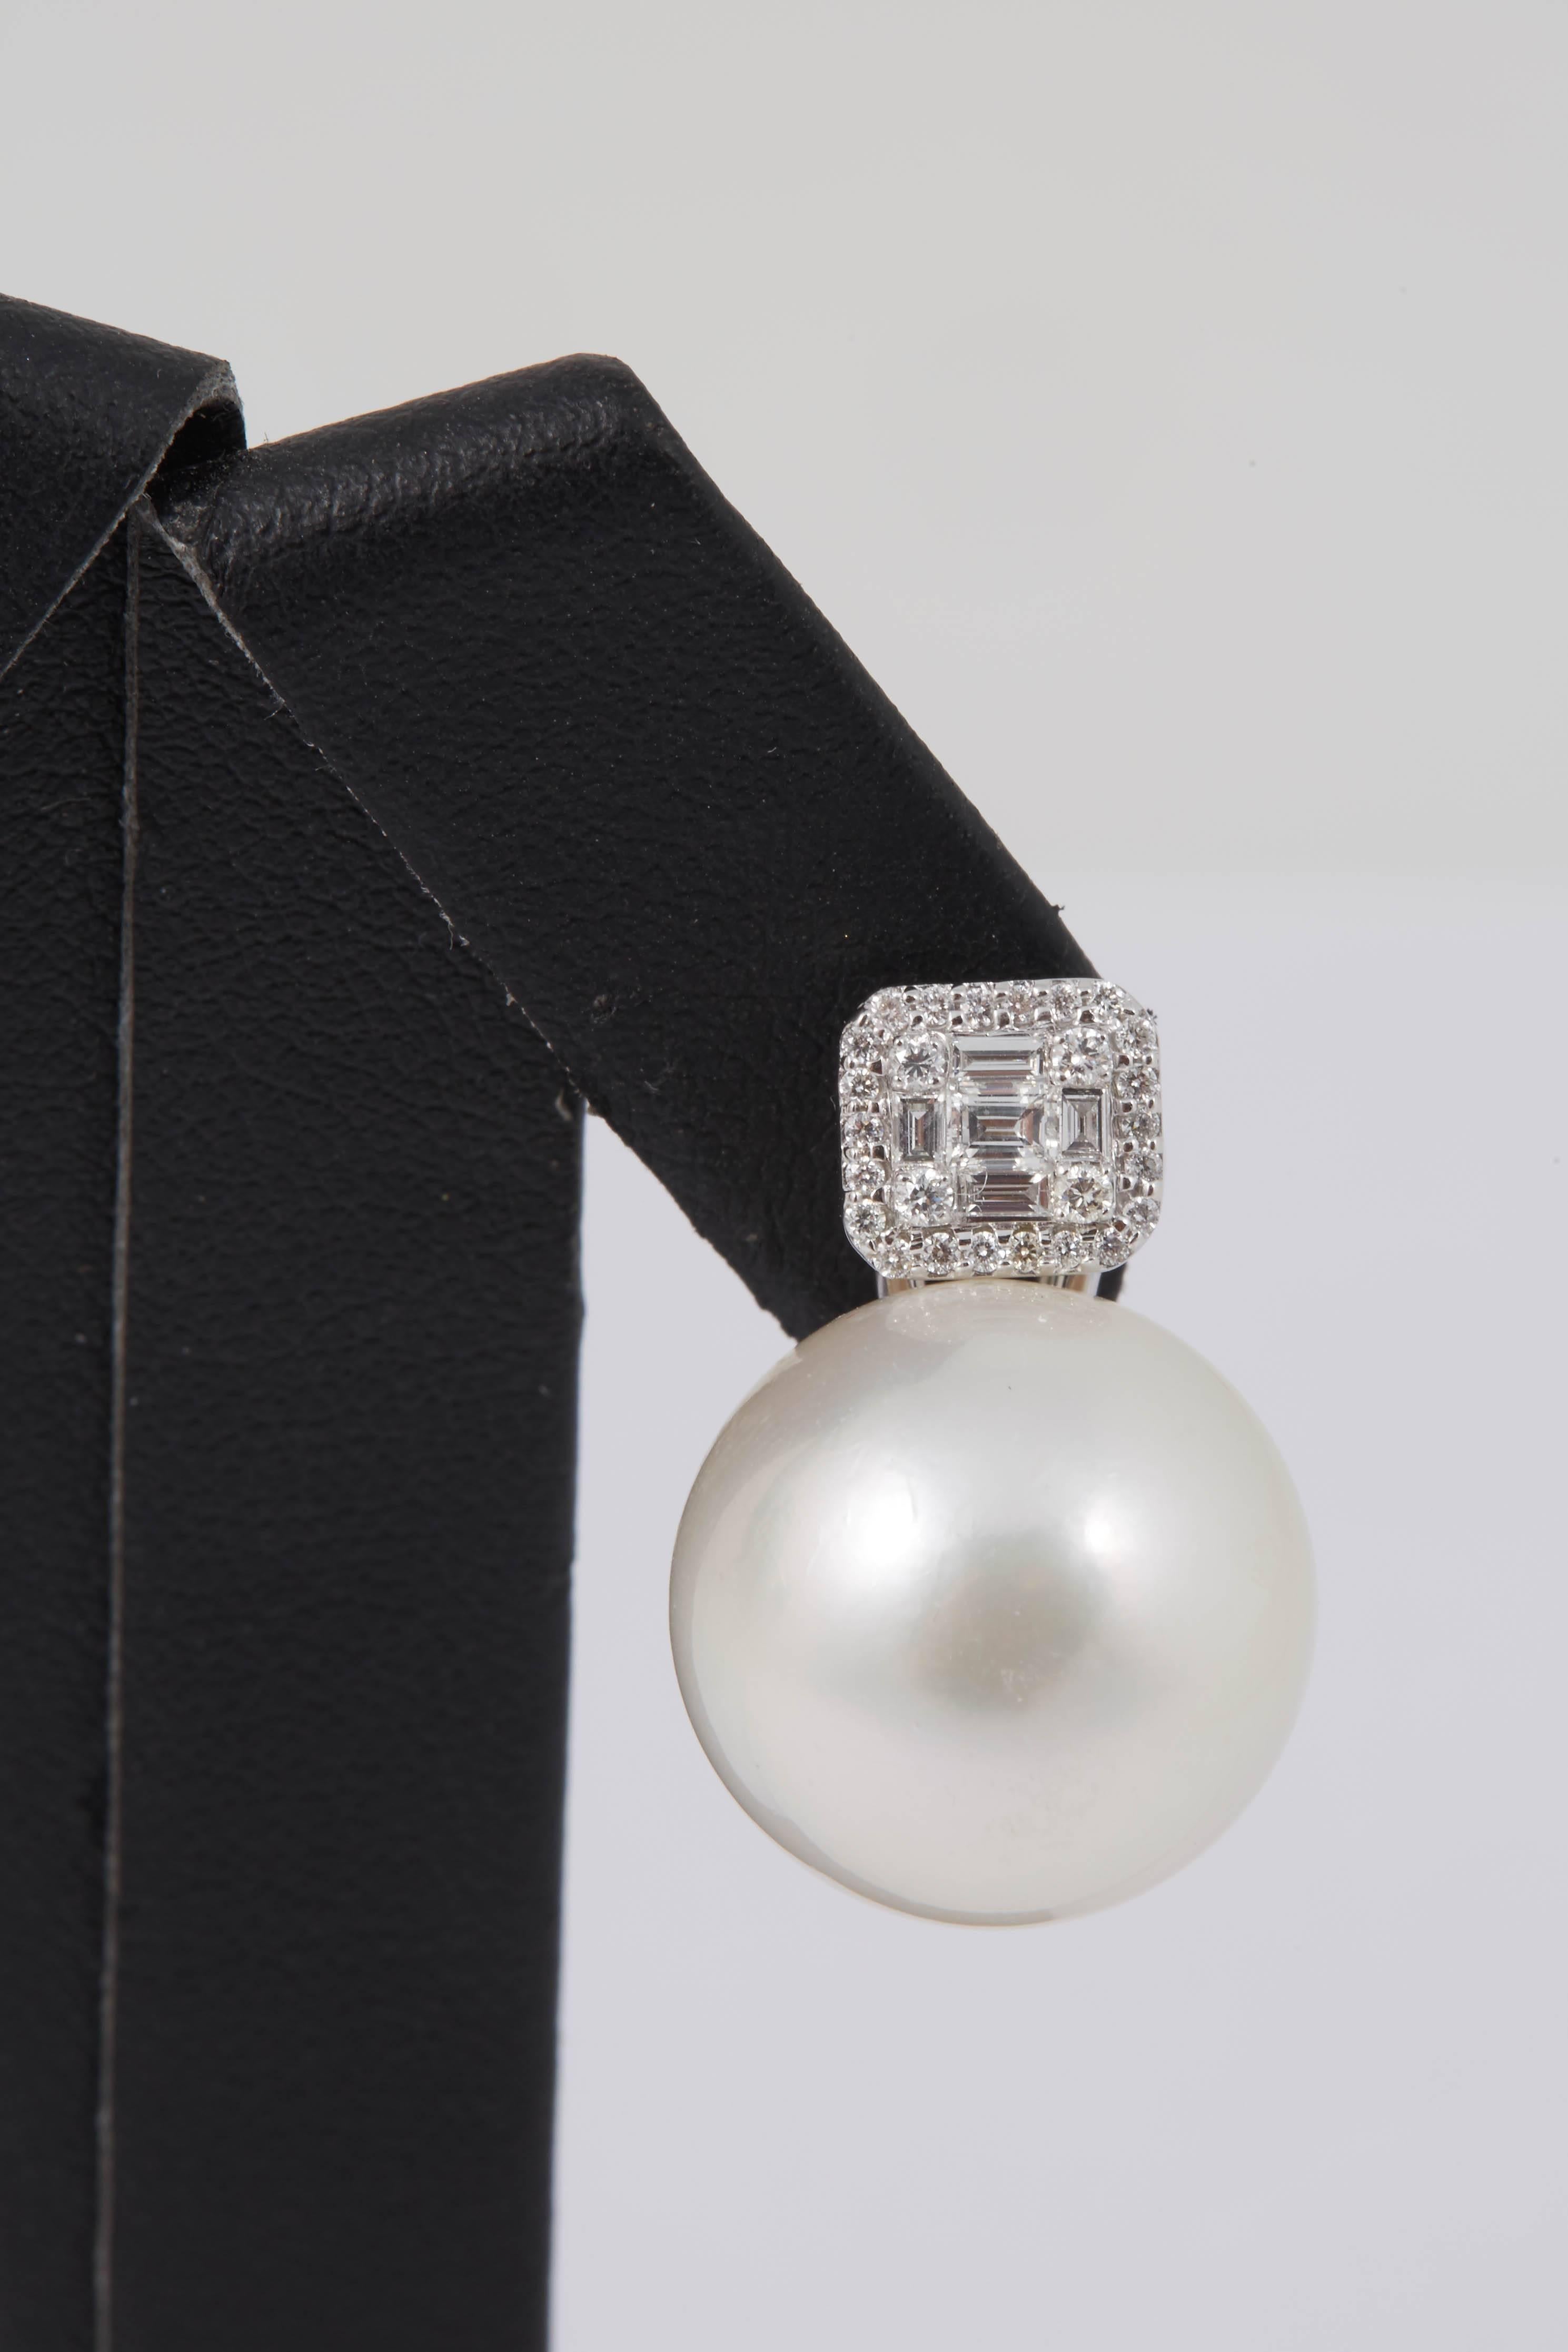 boucles d'oreilles pendantes en or blanc 18 carats présentant deux perles des mers du Sud mesurant 15-16 MM flanquées de 10 diamants baguette pesant 0.30 carats et 52 brillants ronds pesant 0.30 carats.
